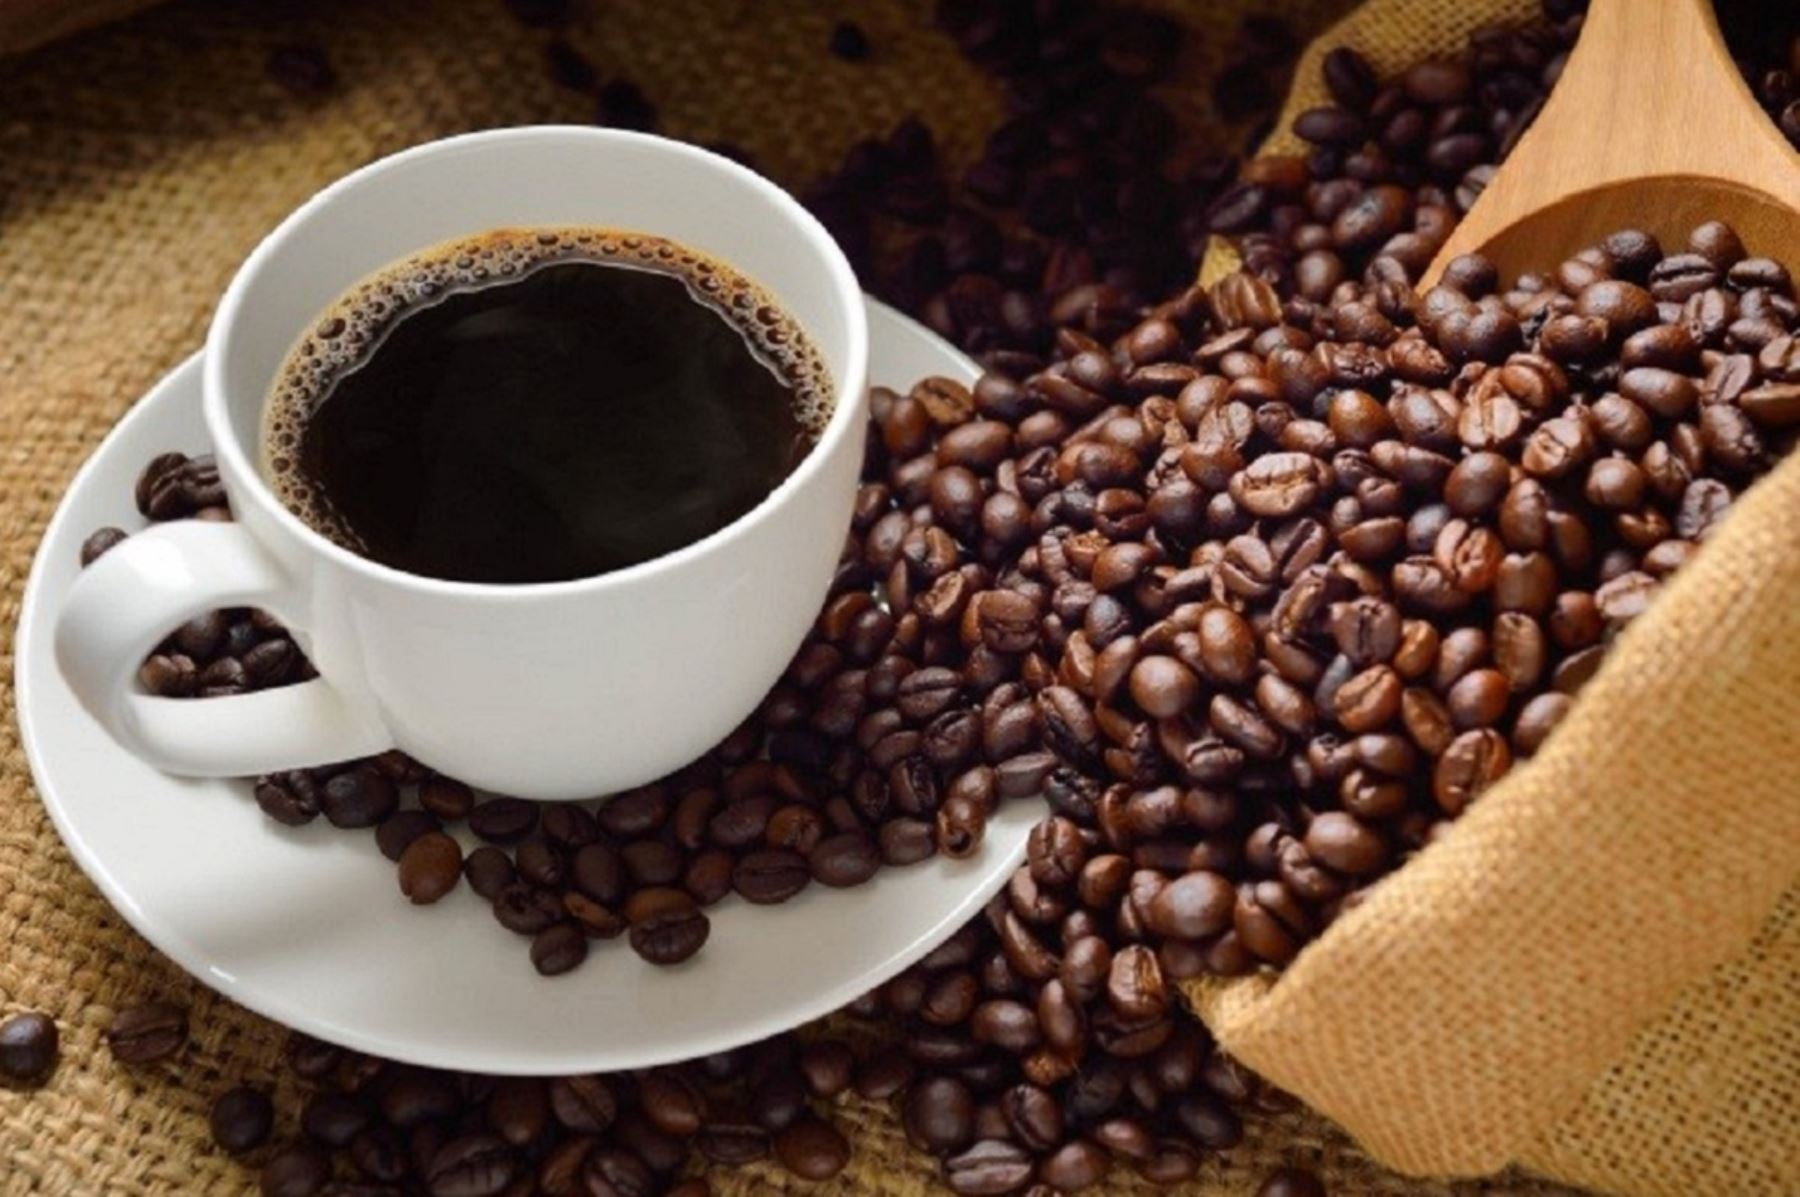 El café peruano es una fuente considerable antioxidantes llamados polifenoles y compuestos fenólicos. También contiene vitaminas del complejo B como riboflavina (B2), niacina (B3) y ácido pantoténico (B5), así como minerales como magnesio, manganeso y potasio. Foto: ANDINA/Archivo